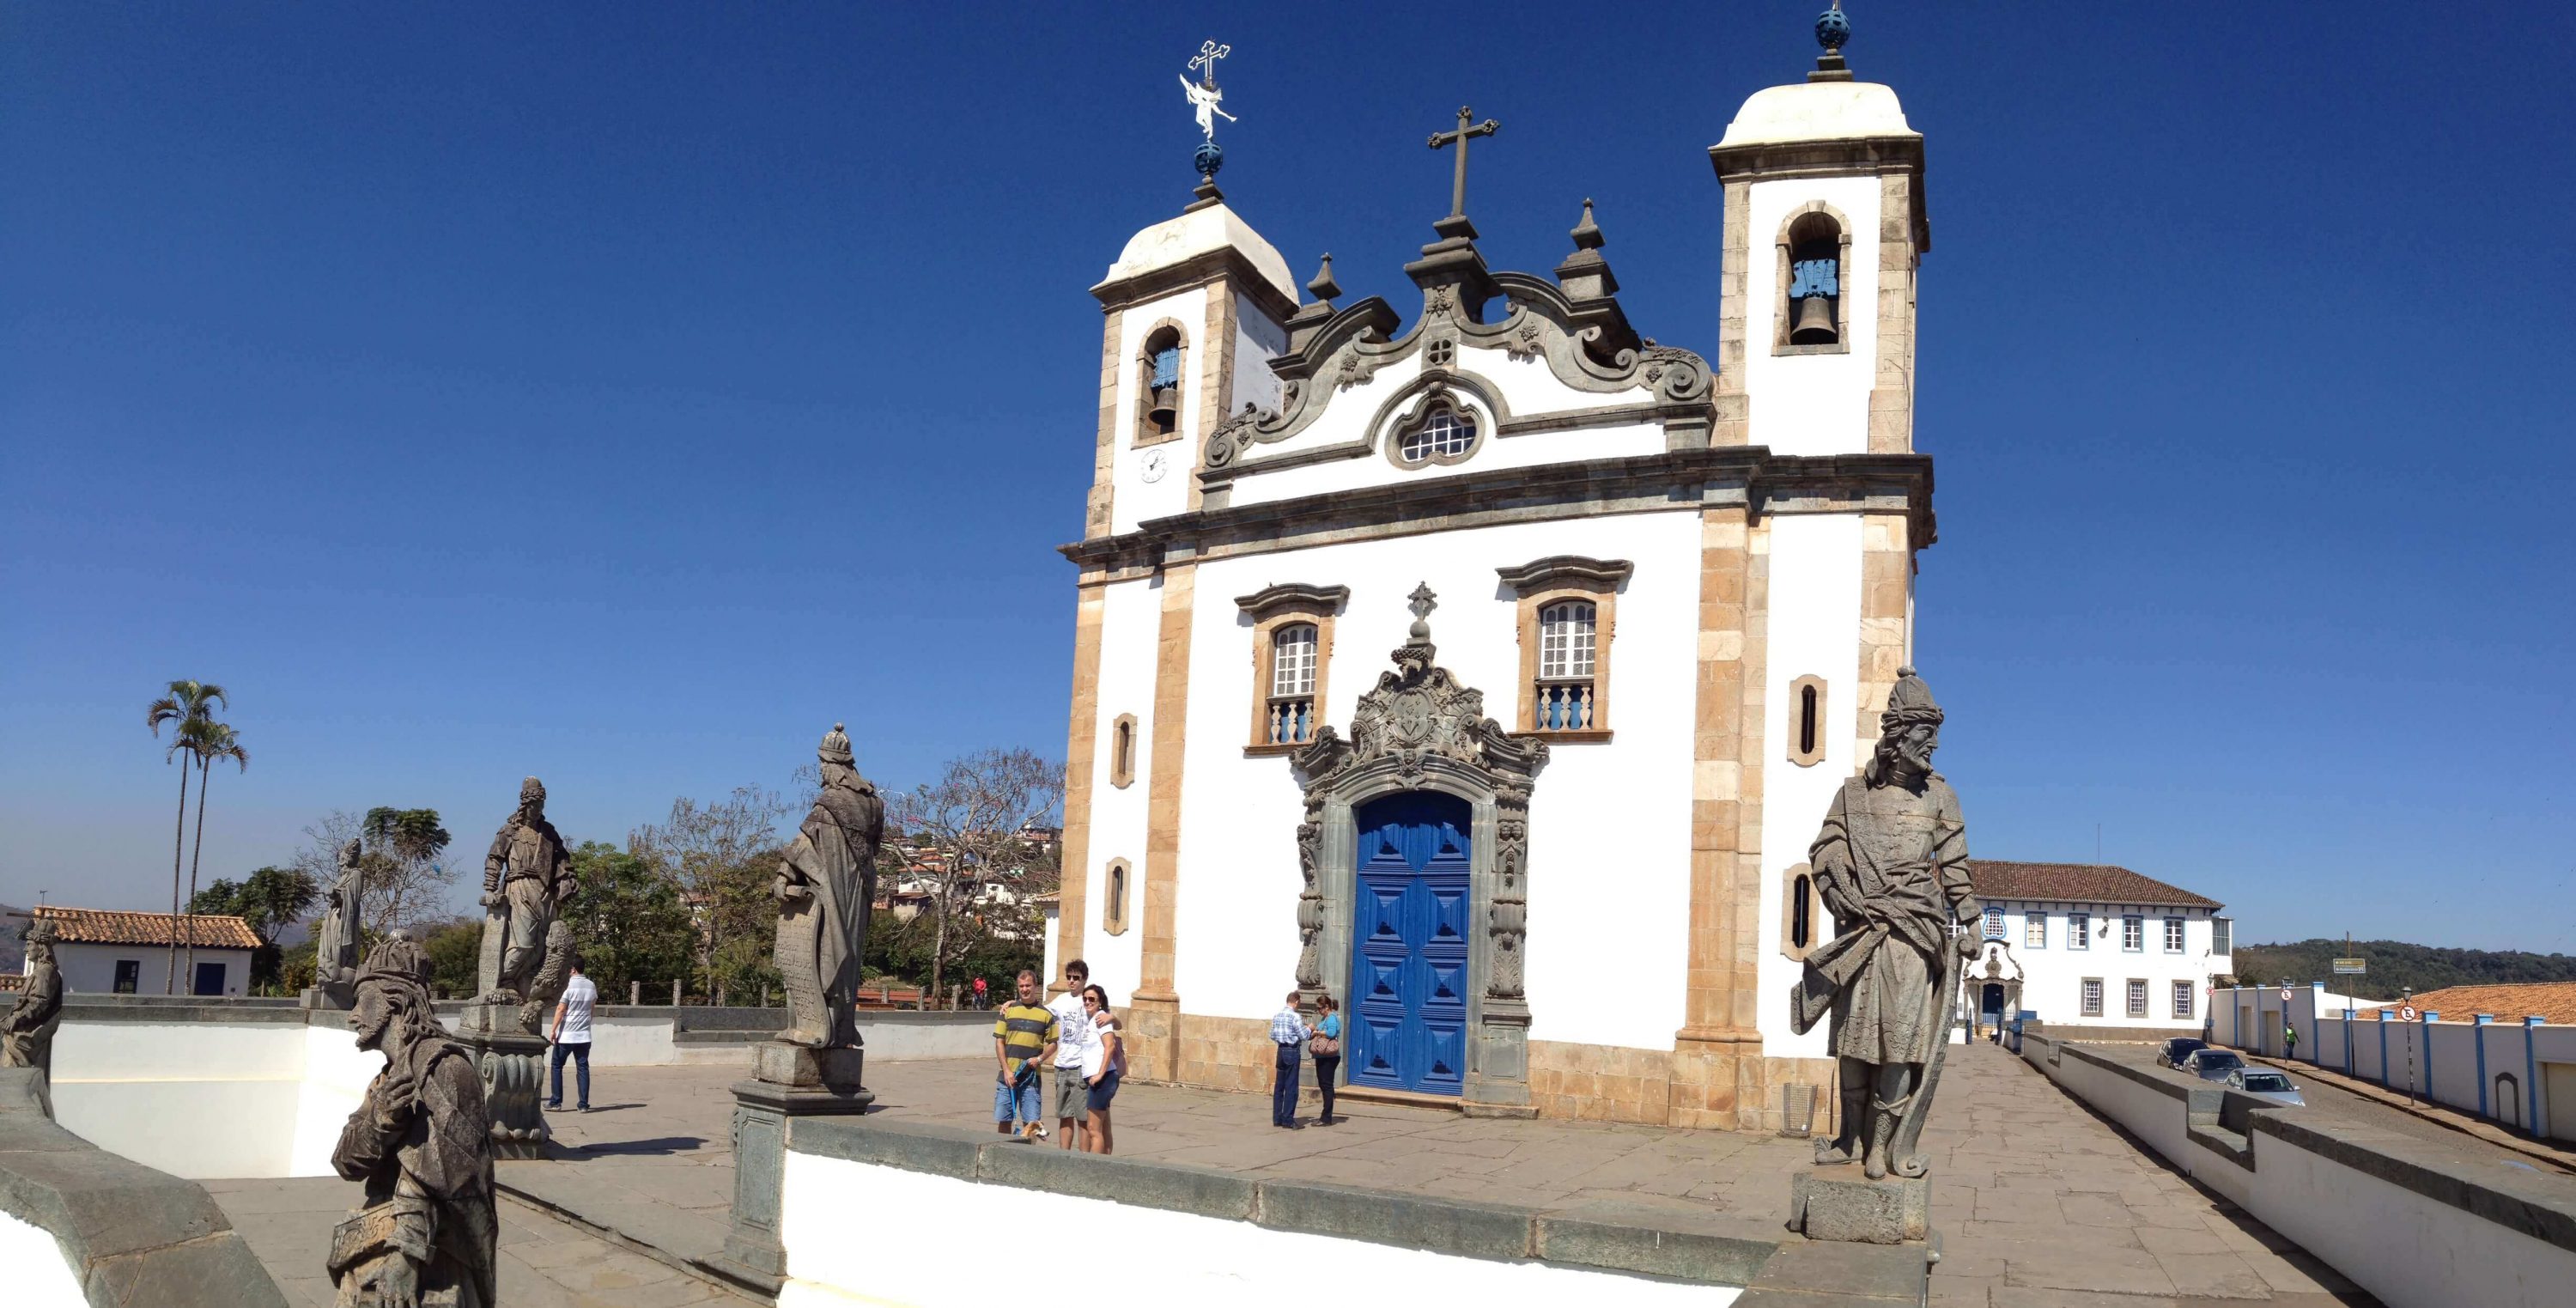 Ciudades Mineiras: Santuario do Senhor de Bom Jesus de Matosinhos